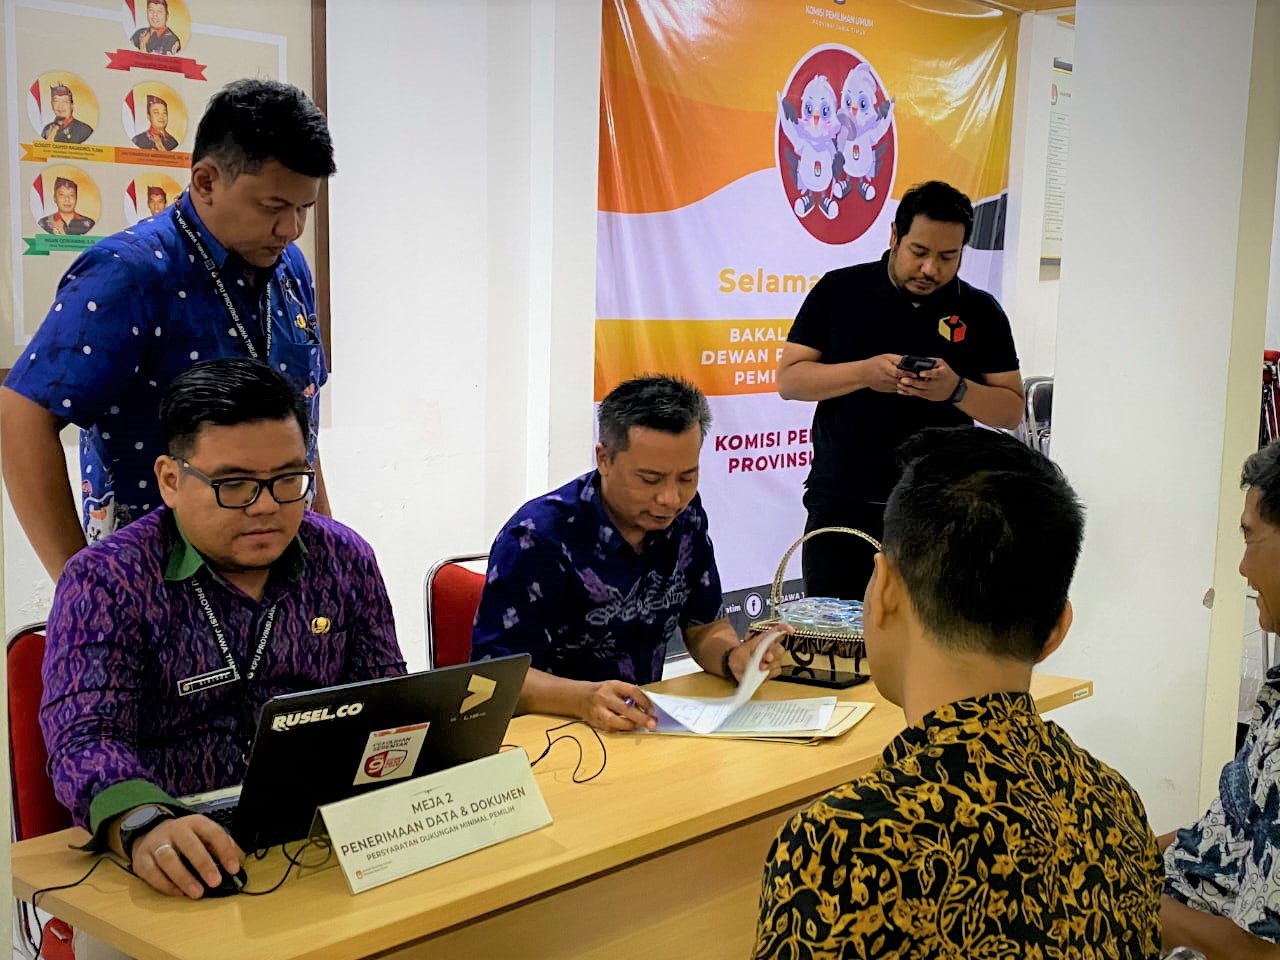 14 Bacalon Anggota DPD Asal Jatim Selesai Serahkan Dokumen Dukungan Perbaikan